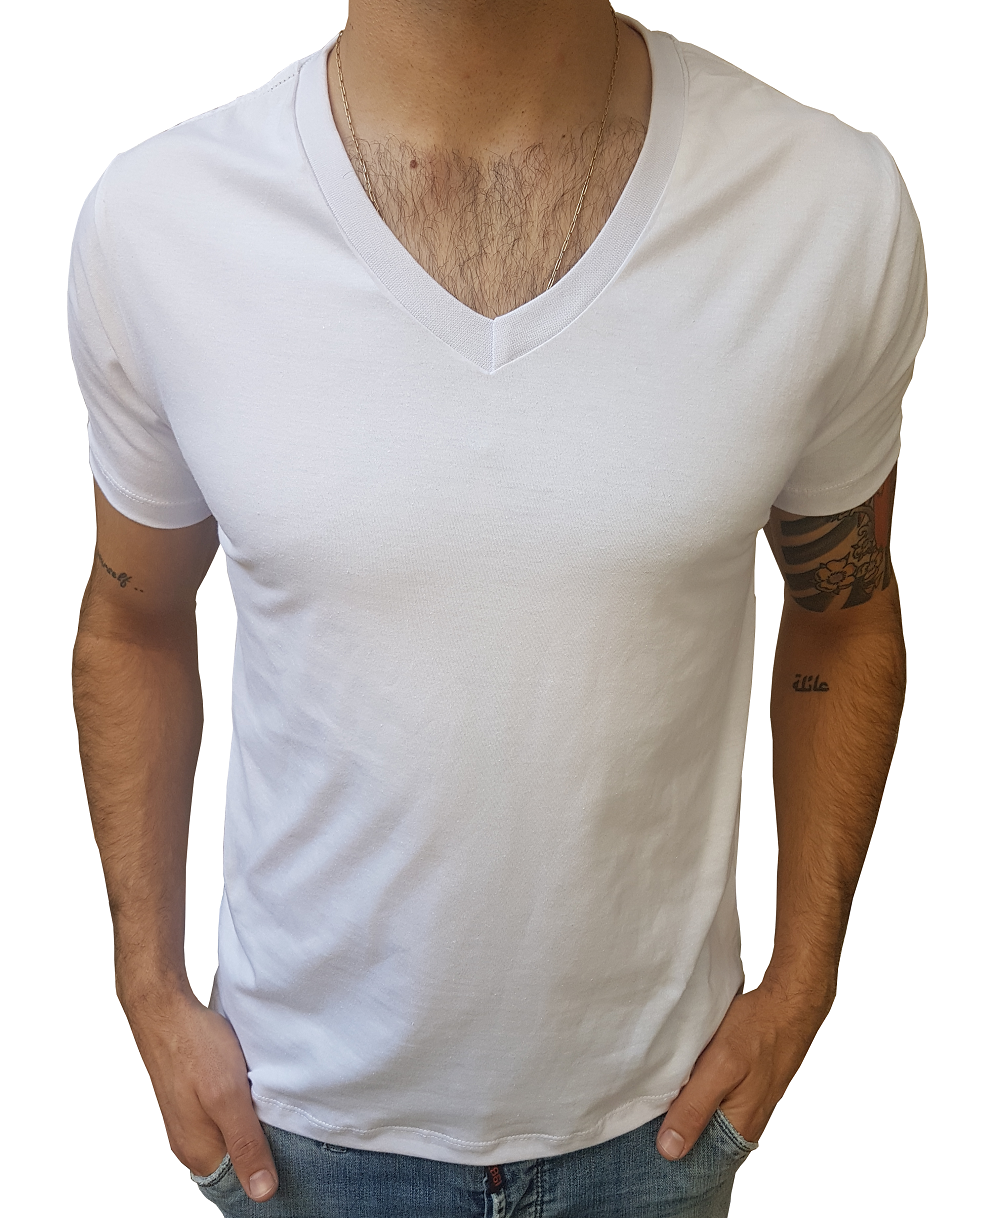 Camiseta Básica Masculina Gola V Médio 100% Algodão Manga Curta